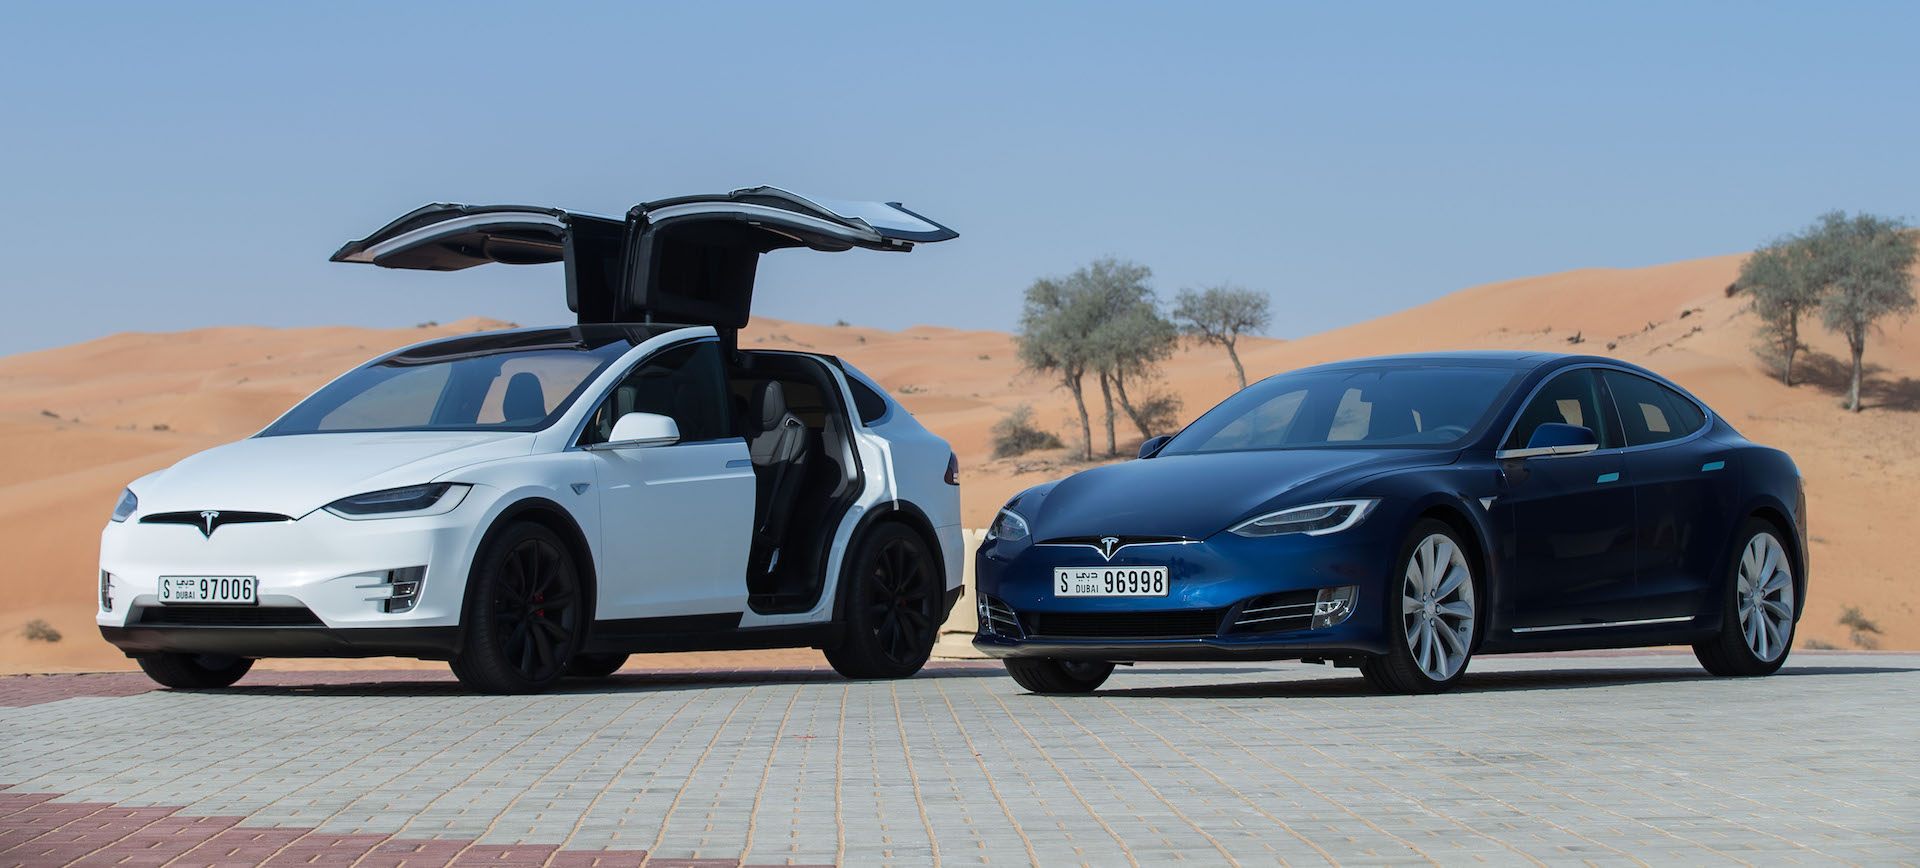 Tesla-Dubai-limousine-tax-service